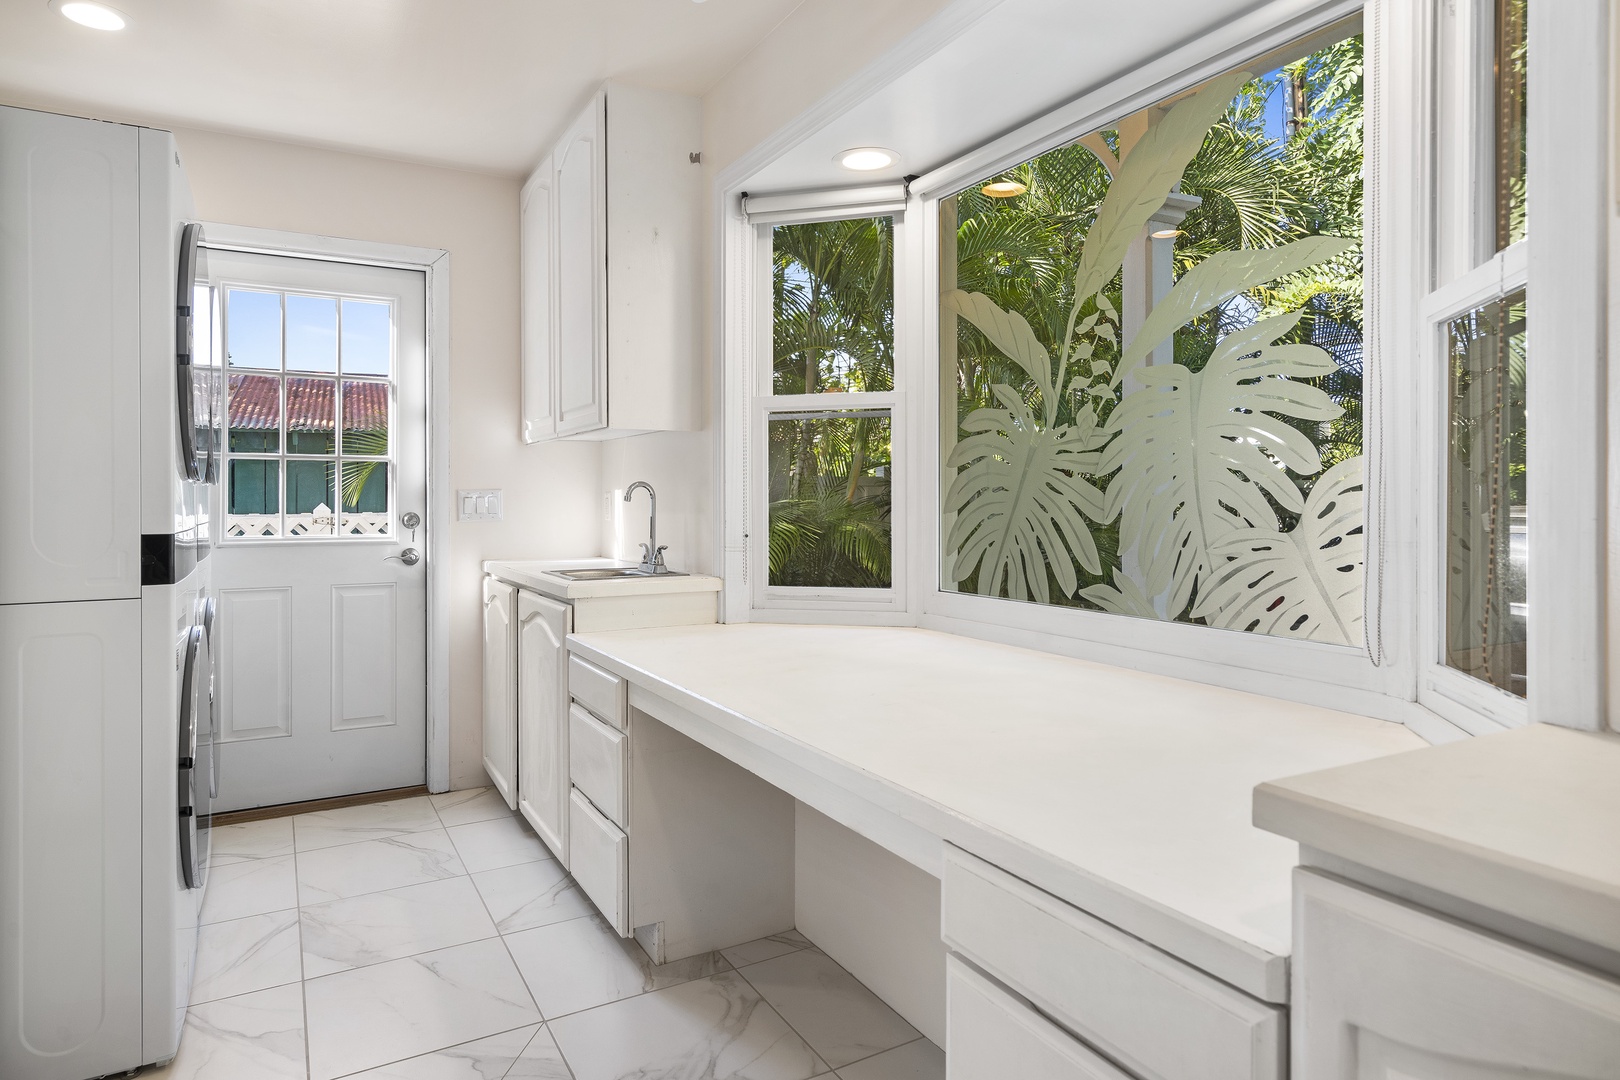 Kailua Kona Vacation Rentals, Dolphin Manor - Spacious Laundry room/pantry area